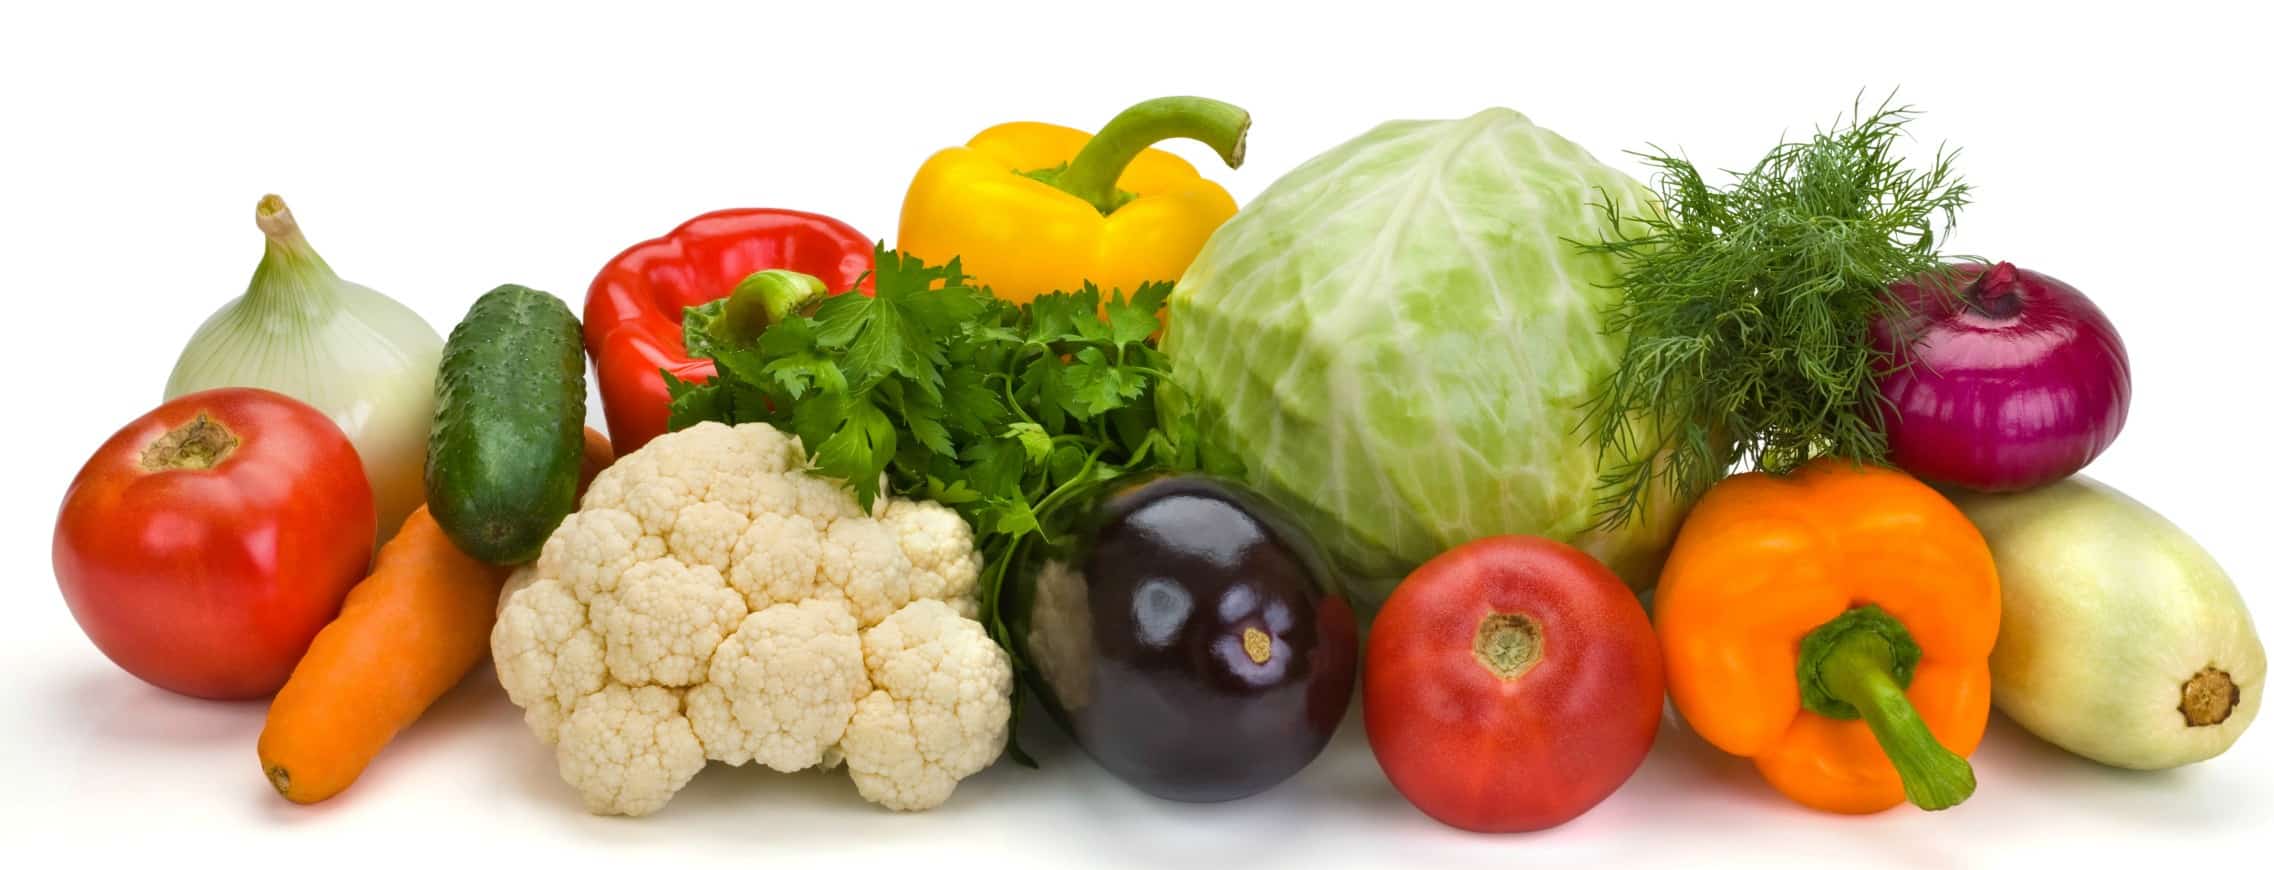 fresh-vegetables-e1441231601351